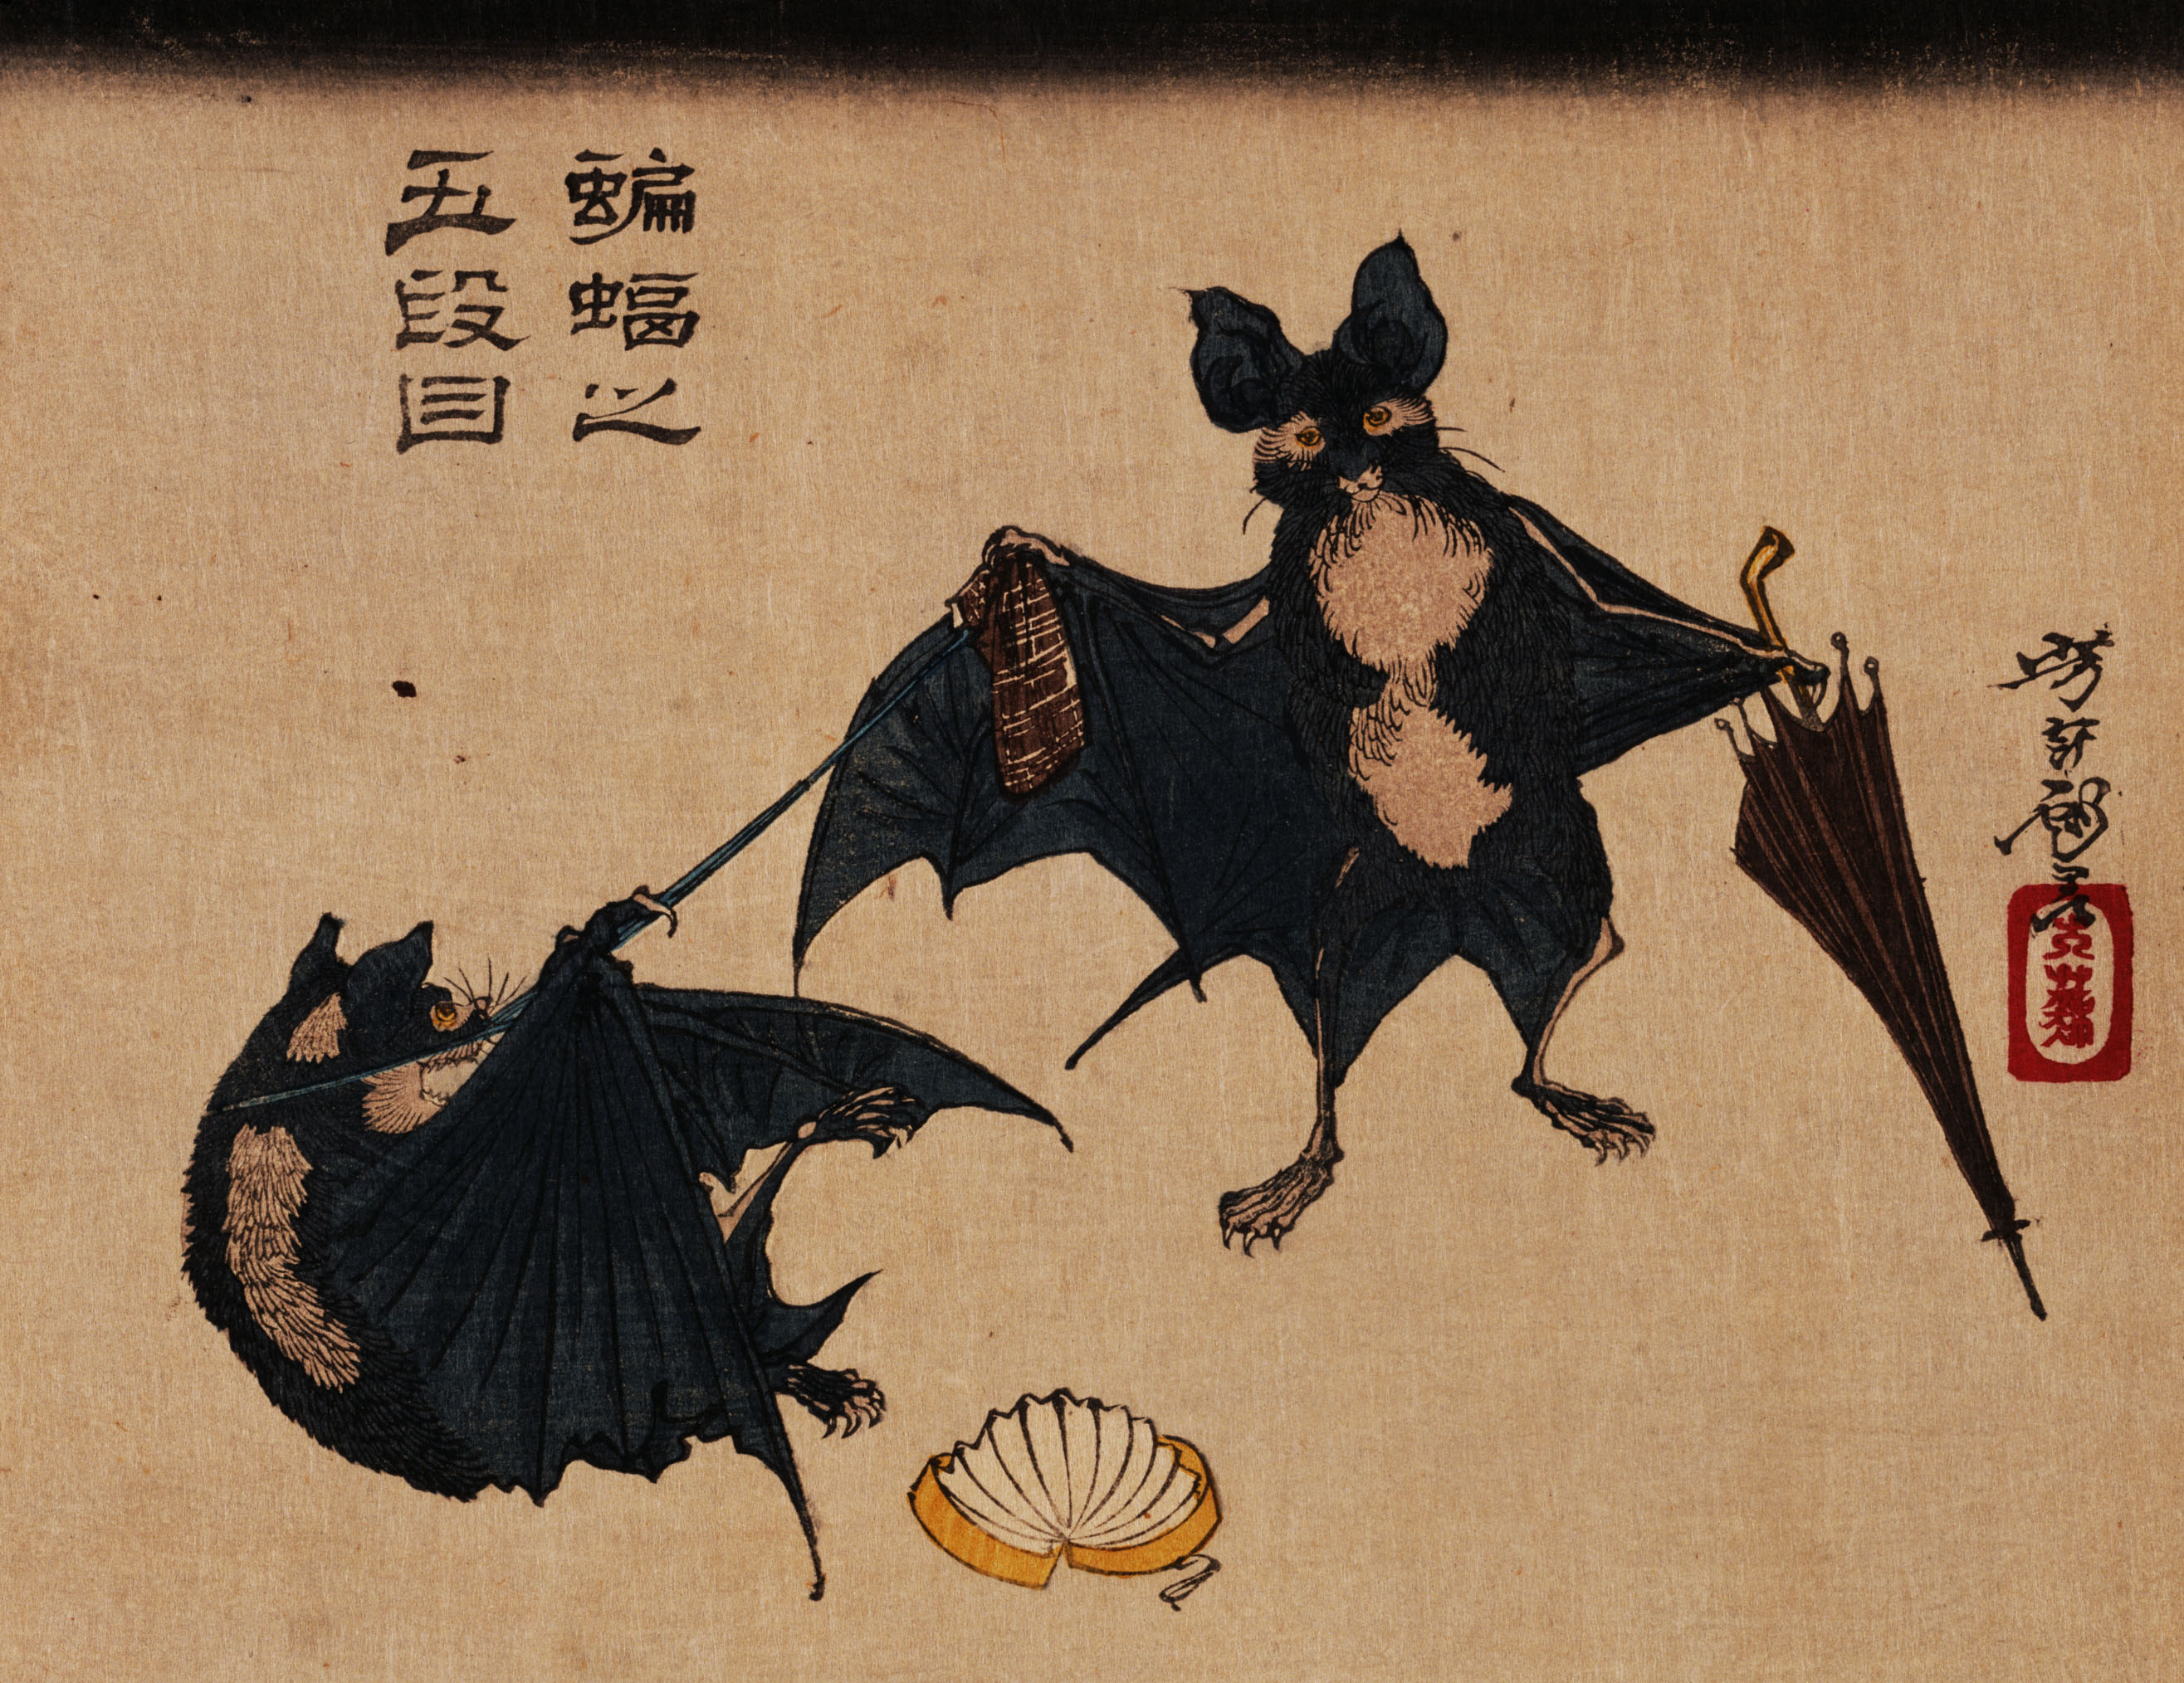 artistic, japanese, bat